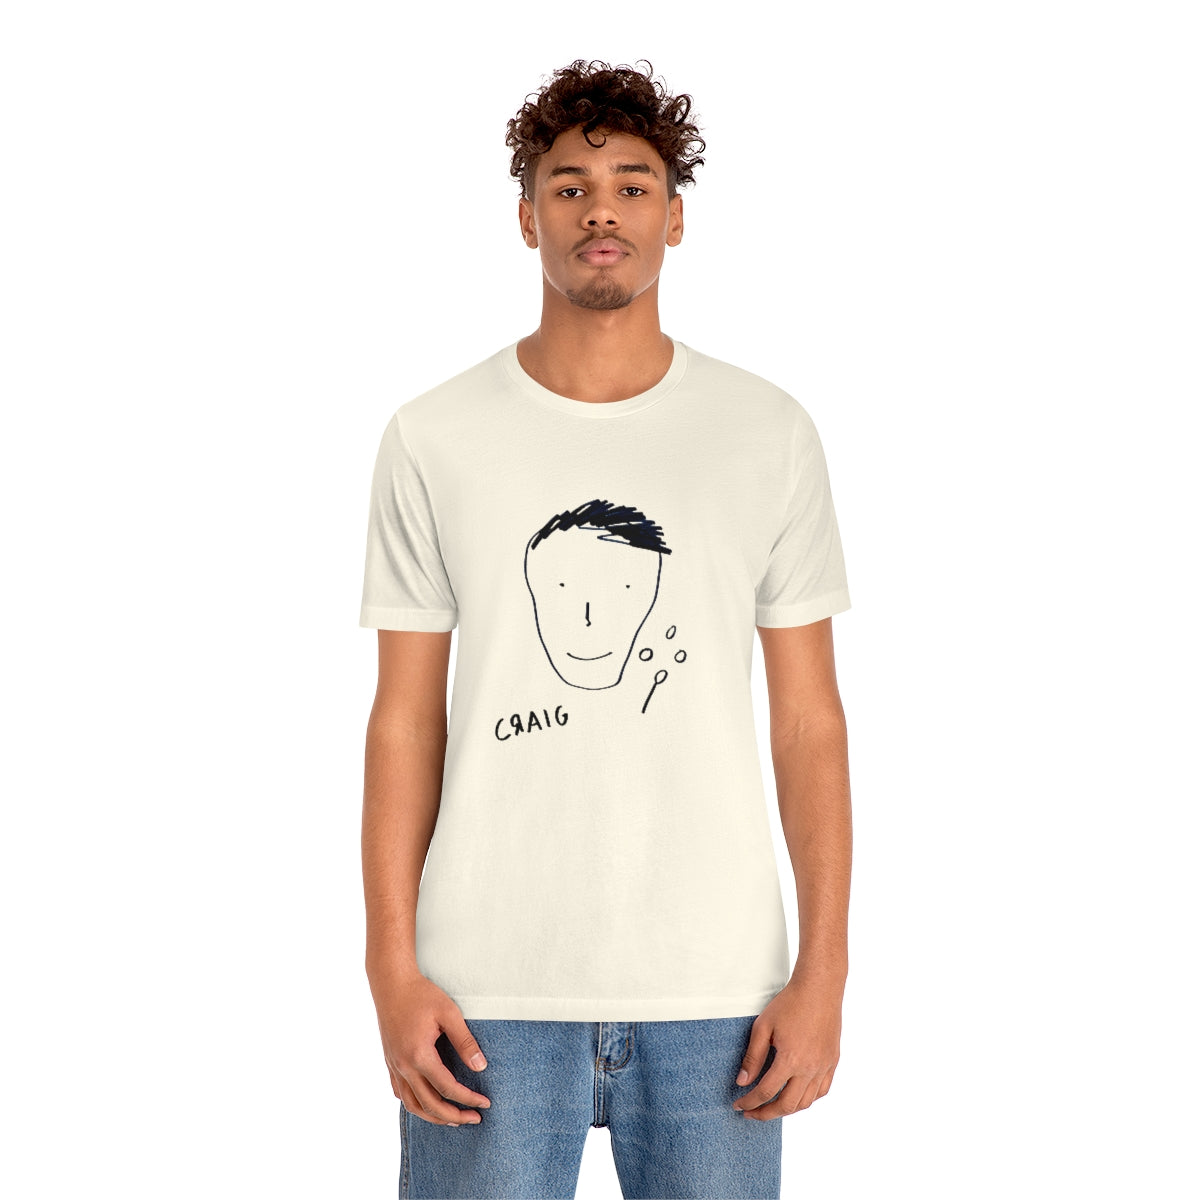 craig's self portrait shirt (Unisex)